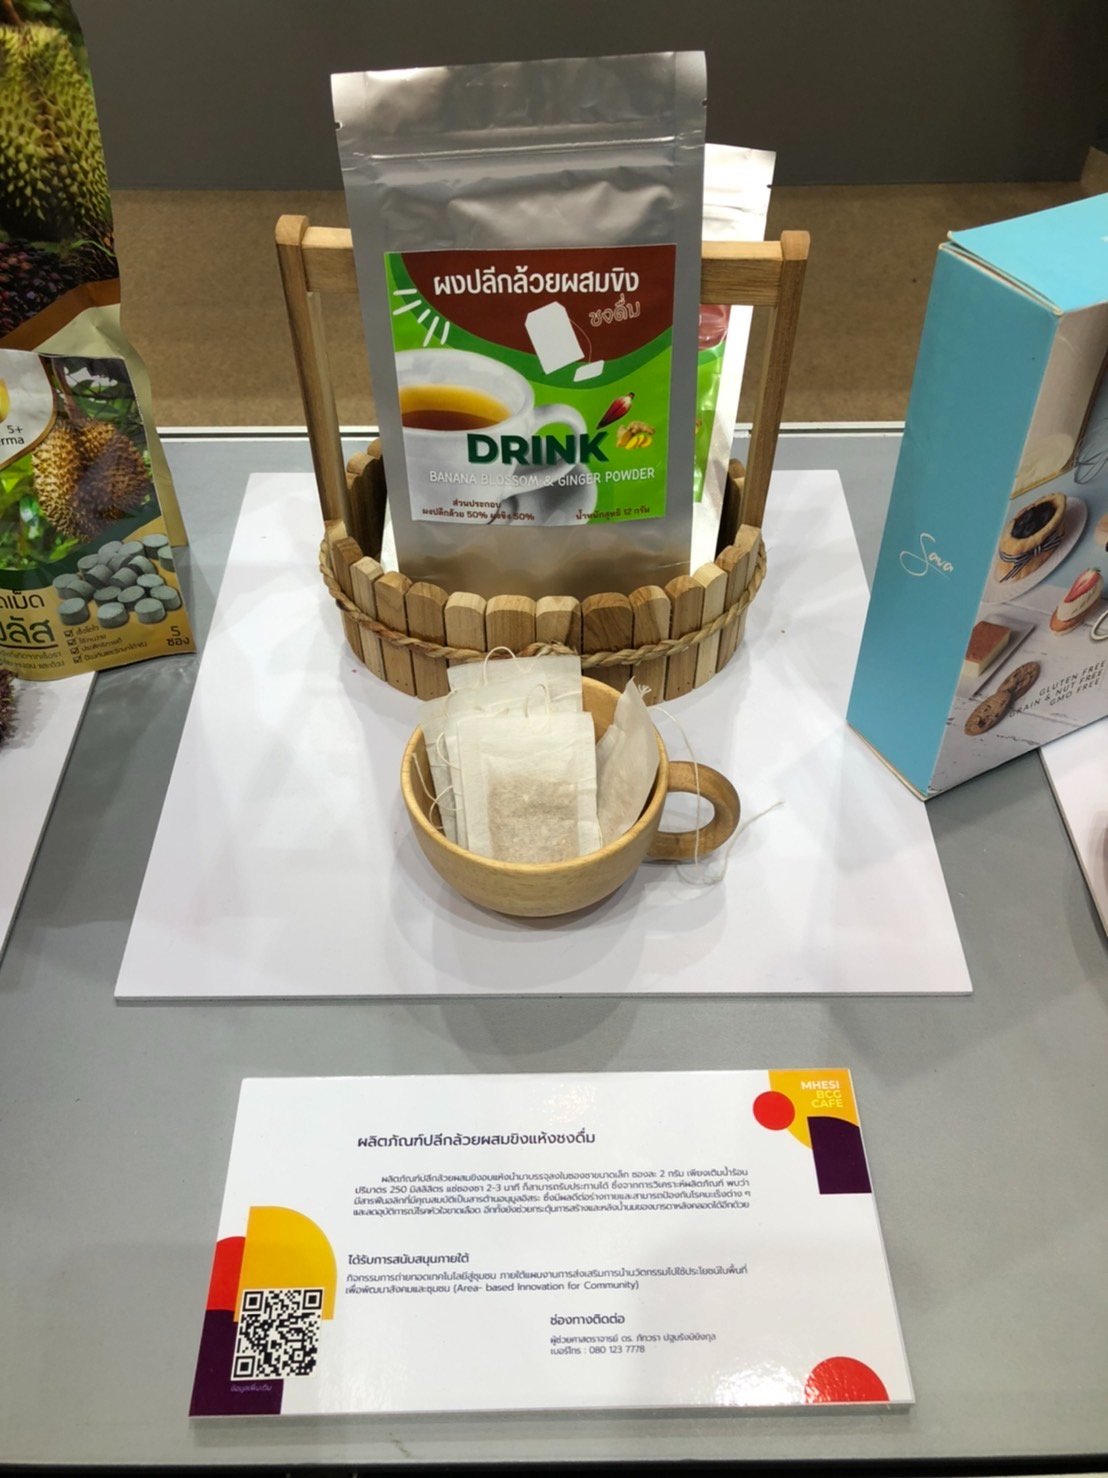 ผลิตภัณฑ์จากผักพื้นบ้าน “แกงผักเชียงดากึ่งสำเร็จรูป” และ “ผงปลีกล้วยผสมขิงชงดื่ม” ร่วมจัดแสดงในงาน FTI EXPO 2022